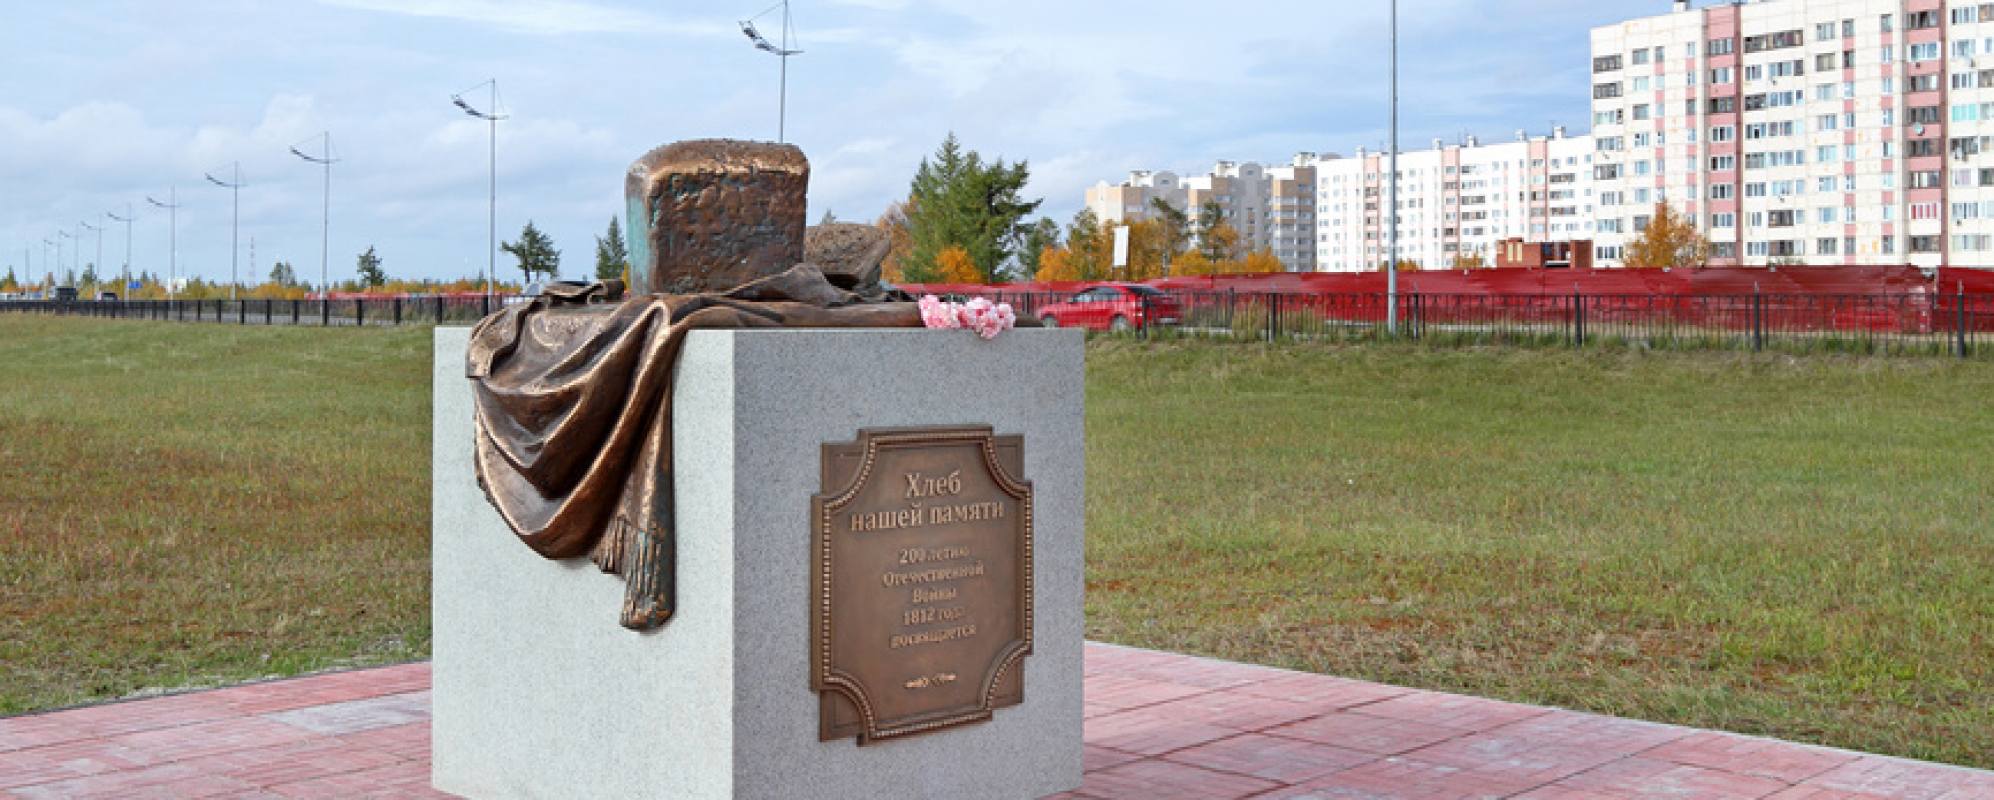 Фотографии памятника Памятник Хлеб нашей памяти